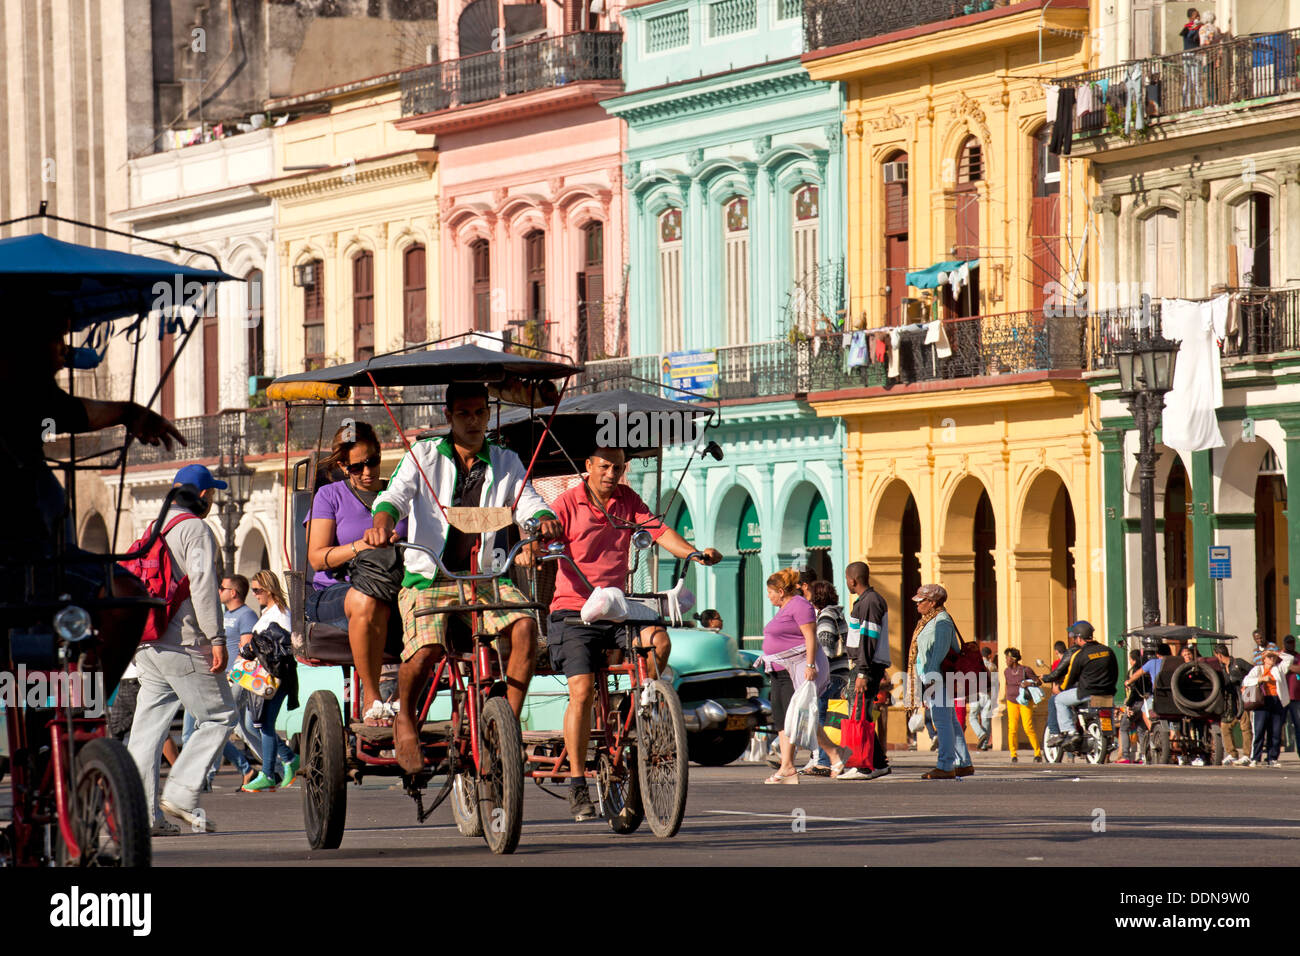 Vélo taxi et bâtiments colorés dans le centre de La Havane, Cuba, Caraïbes Banque D'Images